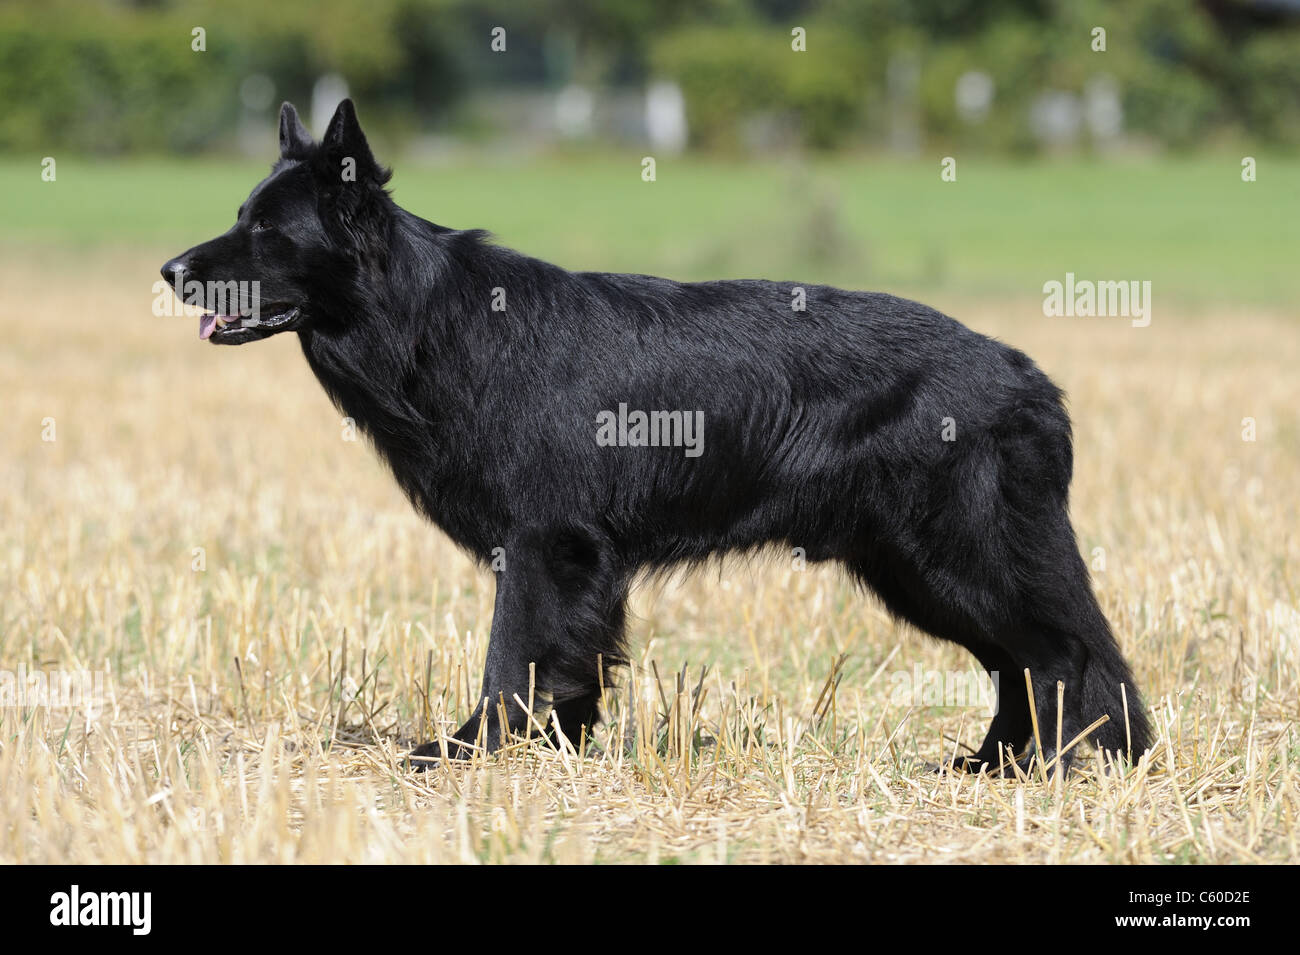 Berger allemand, l'alsacien (Canis lupus familiaris). Mâle Noir debout sur un champ de chaumes. Banque D'Images